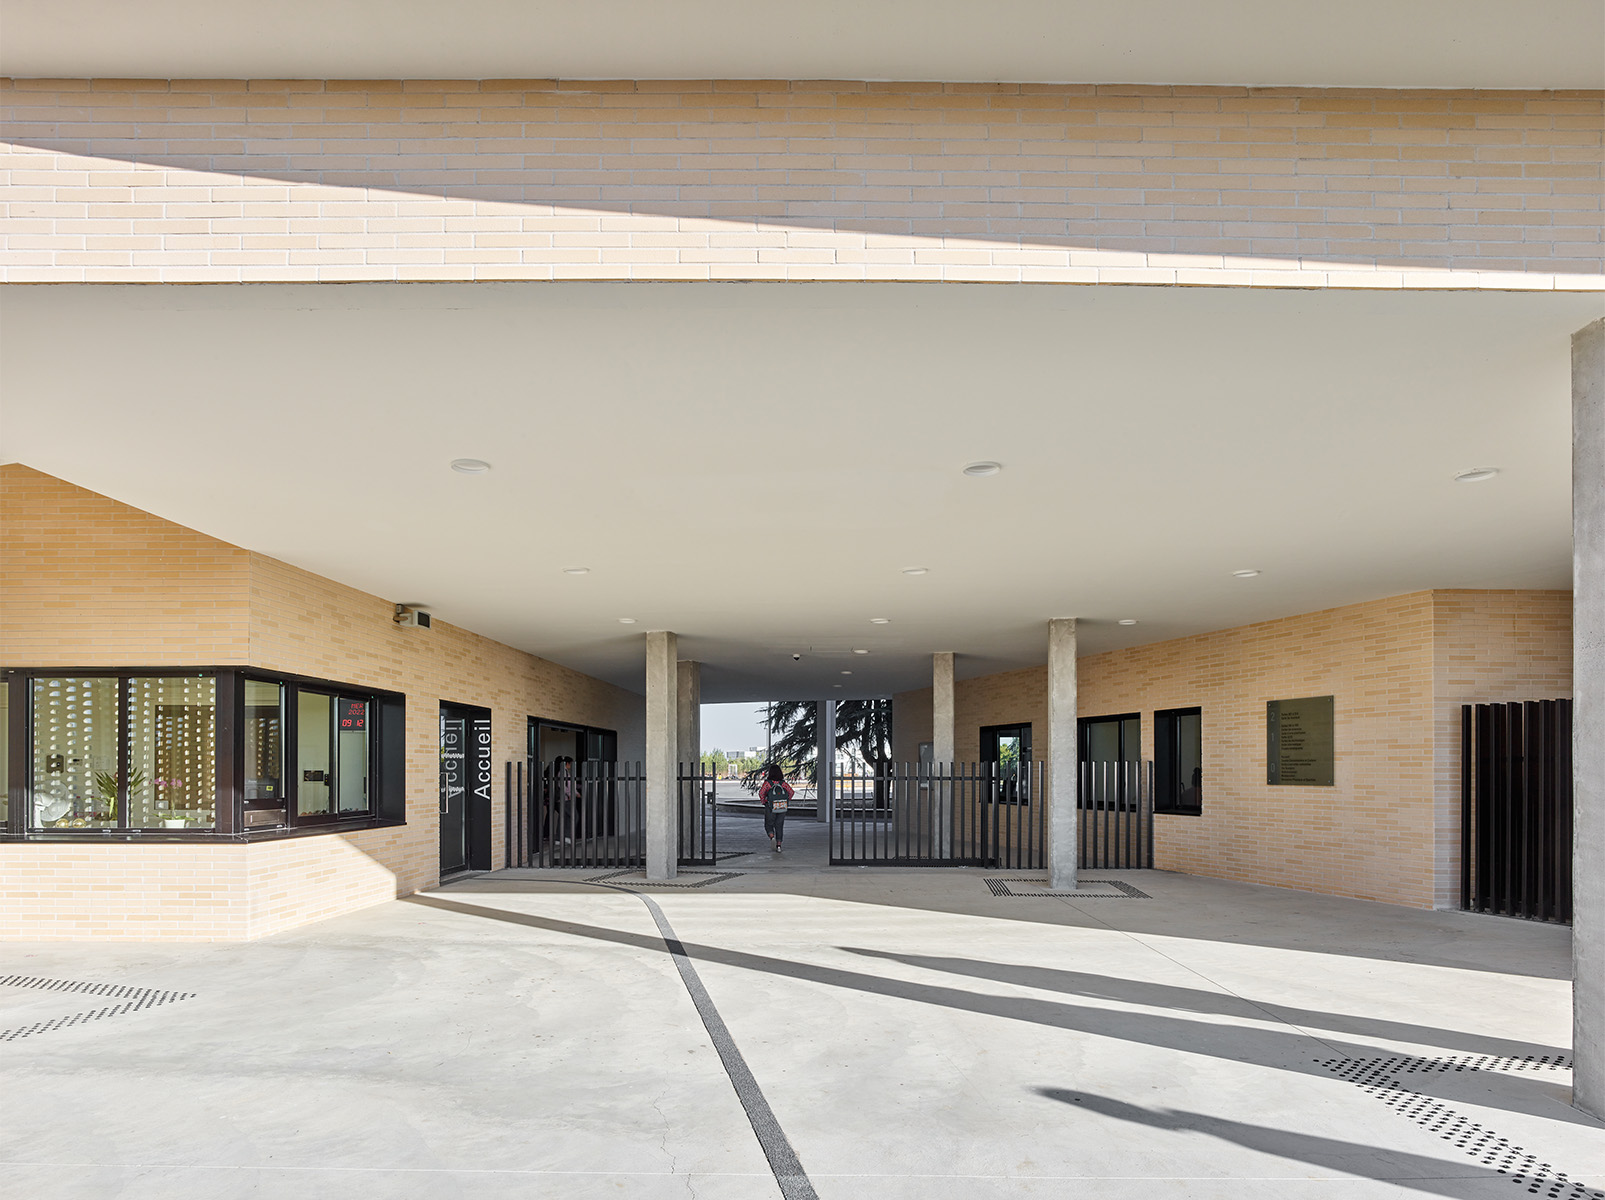 Photographie face aux grilles d'entrées à côté du local d'accueil, plafond blanc et soubassement brique claire , le passage traverse le bâtiment et on peut voir en fond la cour avec une partie d'un cyprès